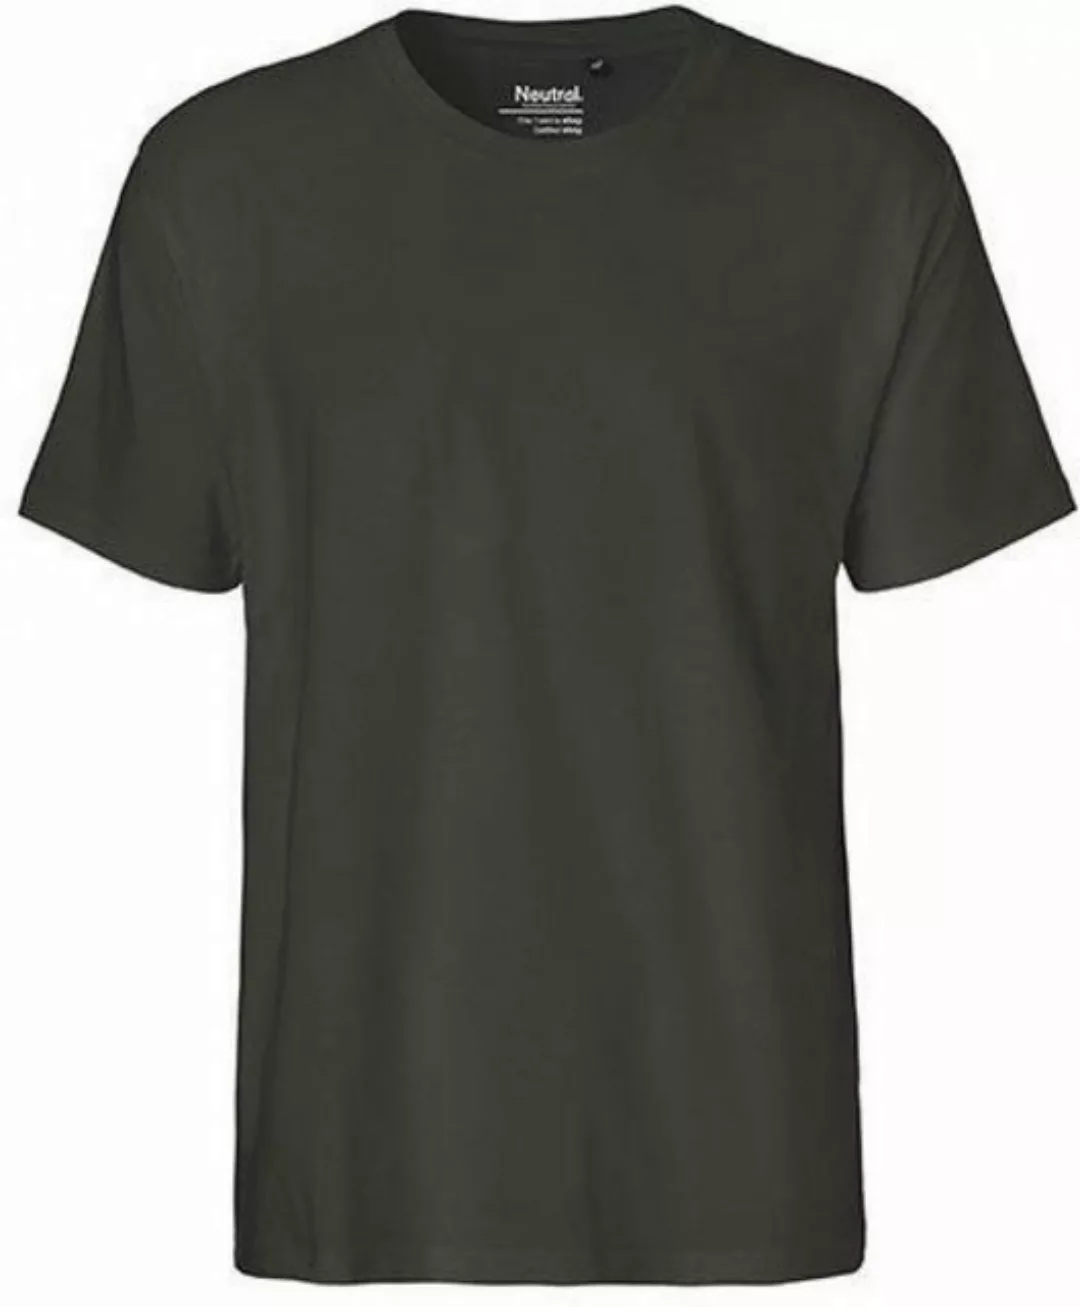 Neutral Rundhalsshirt Herren Classic T-Shirt / 100% Fairtrade Baumwolle günstig online kaufen